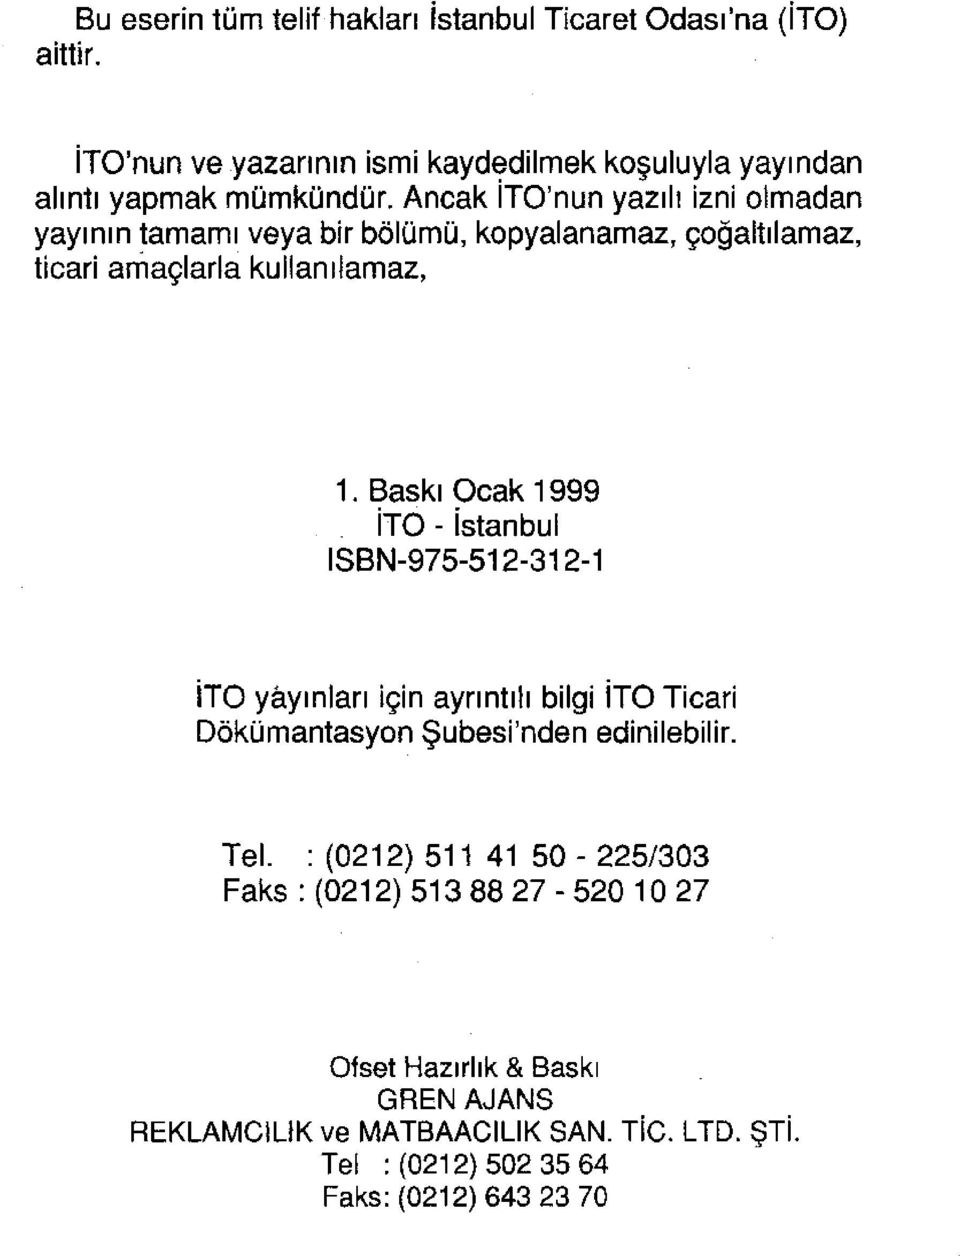 Baskı Ocak 1999 İTO - İstanbul ISBN-975-512-312-1 İTO yayınları için ayrıntılı bilgi İTO Ticari Dokümantasyon Şubesi'nden edinilebilir. Tel.